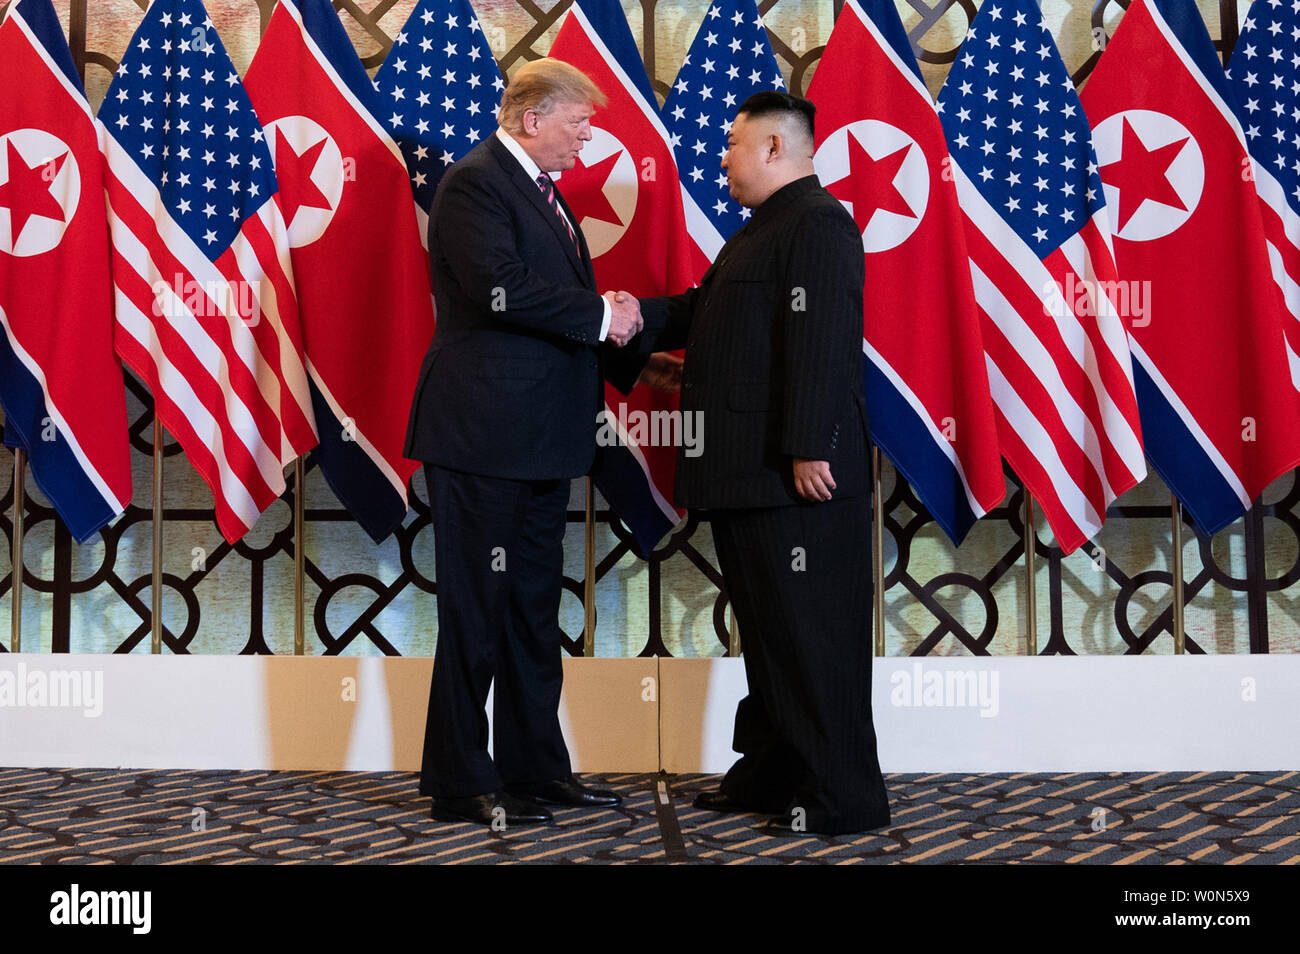 Presidente Trump è accolto da Kim Jong Onu, Presidente del membro commissione degli affari esteri della Repubblica Popolare Democratica di Corea, il 27 febbraio 2019, presso il Sofitel Legend Metropole hotel di Hanoi, per la loro seconda riunione al vertice. White House Foto di Shealah Central Plaza Hotel/UPI Foto Stock